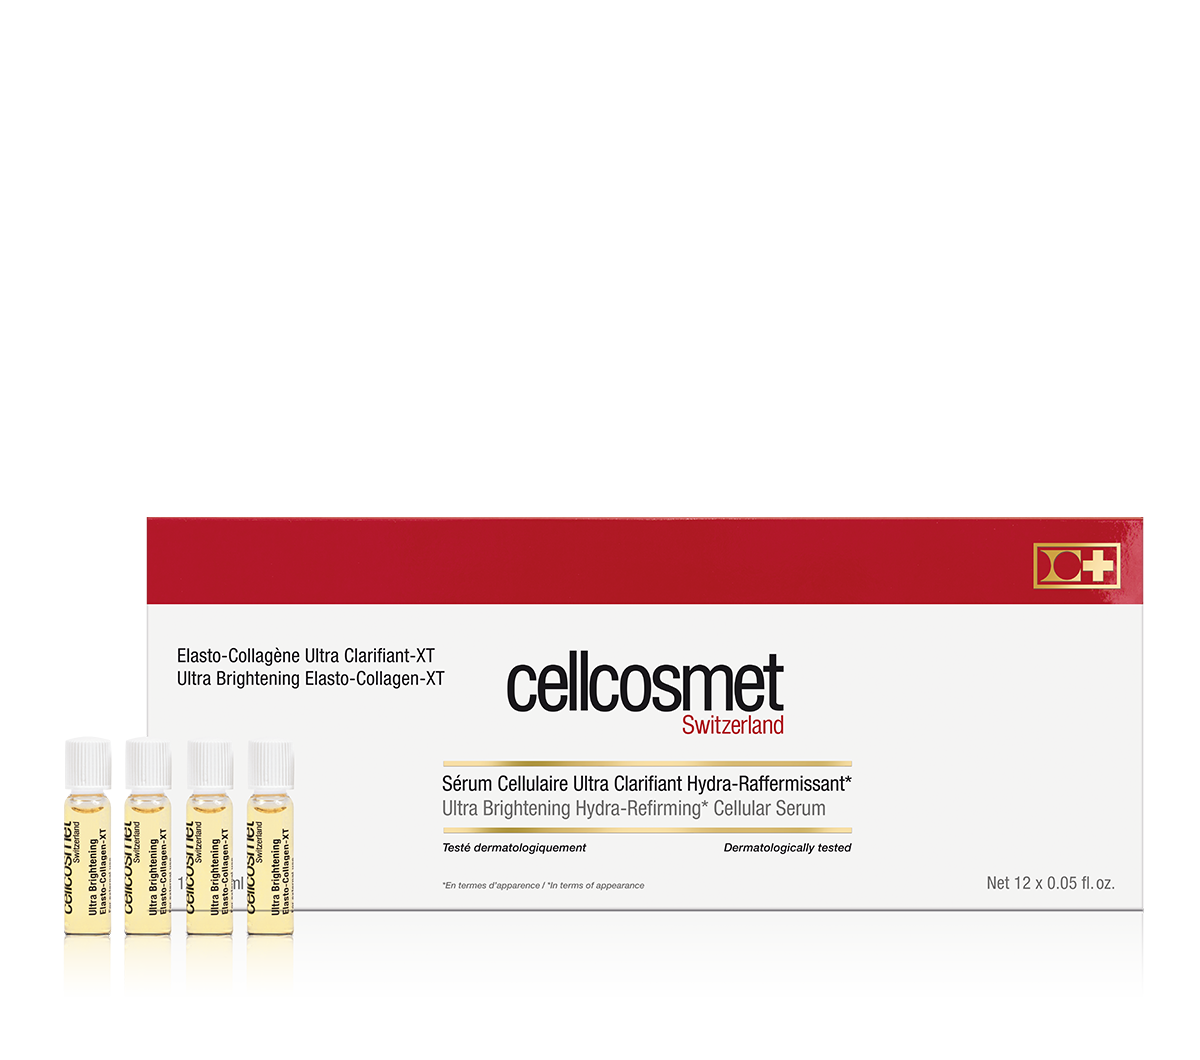 CELLCOSMET Ultra Brightening Elasto-Collagen-XT